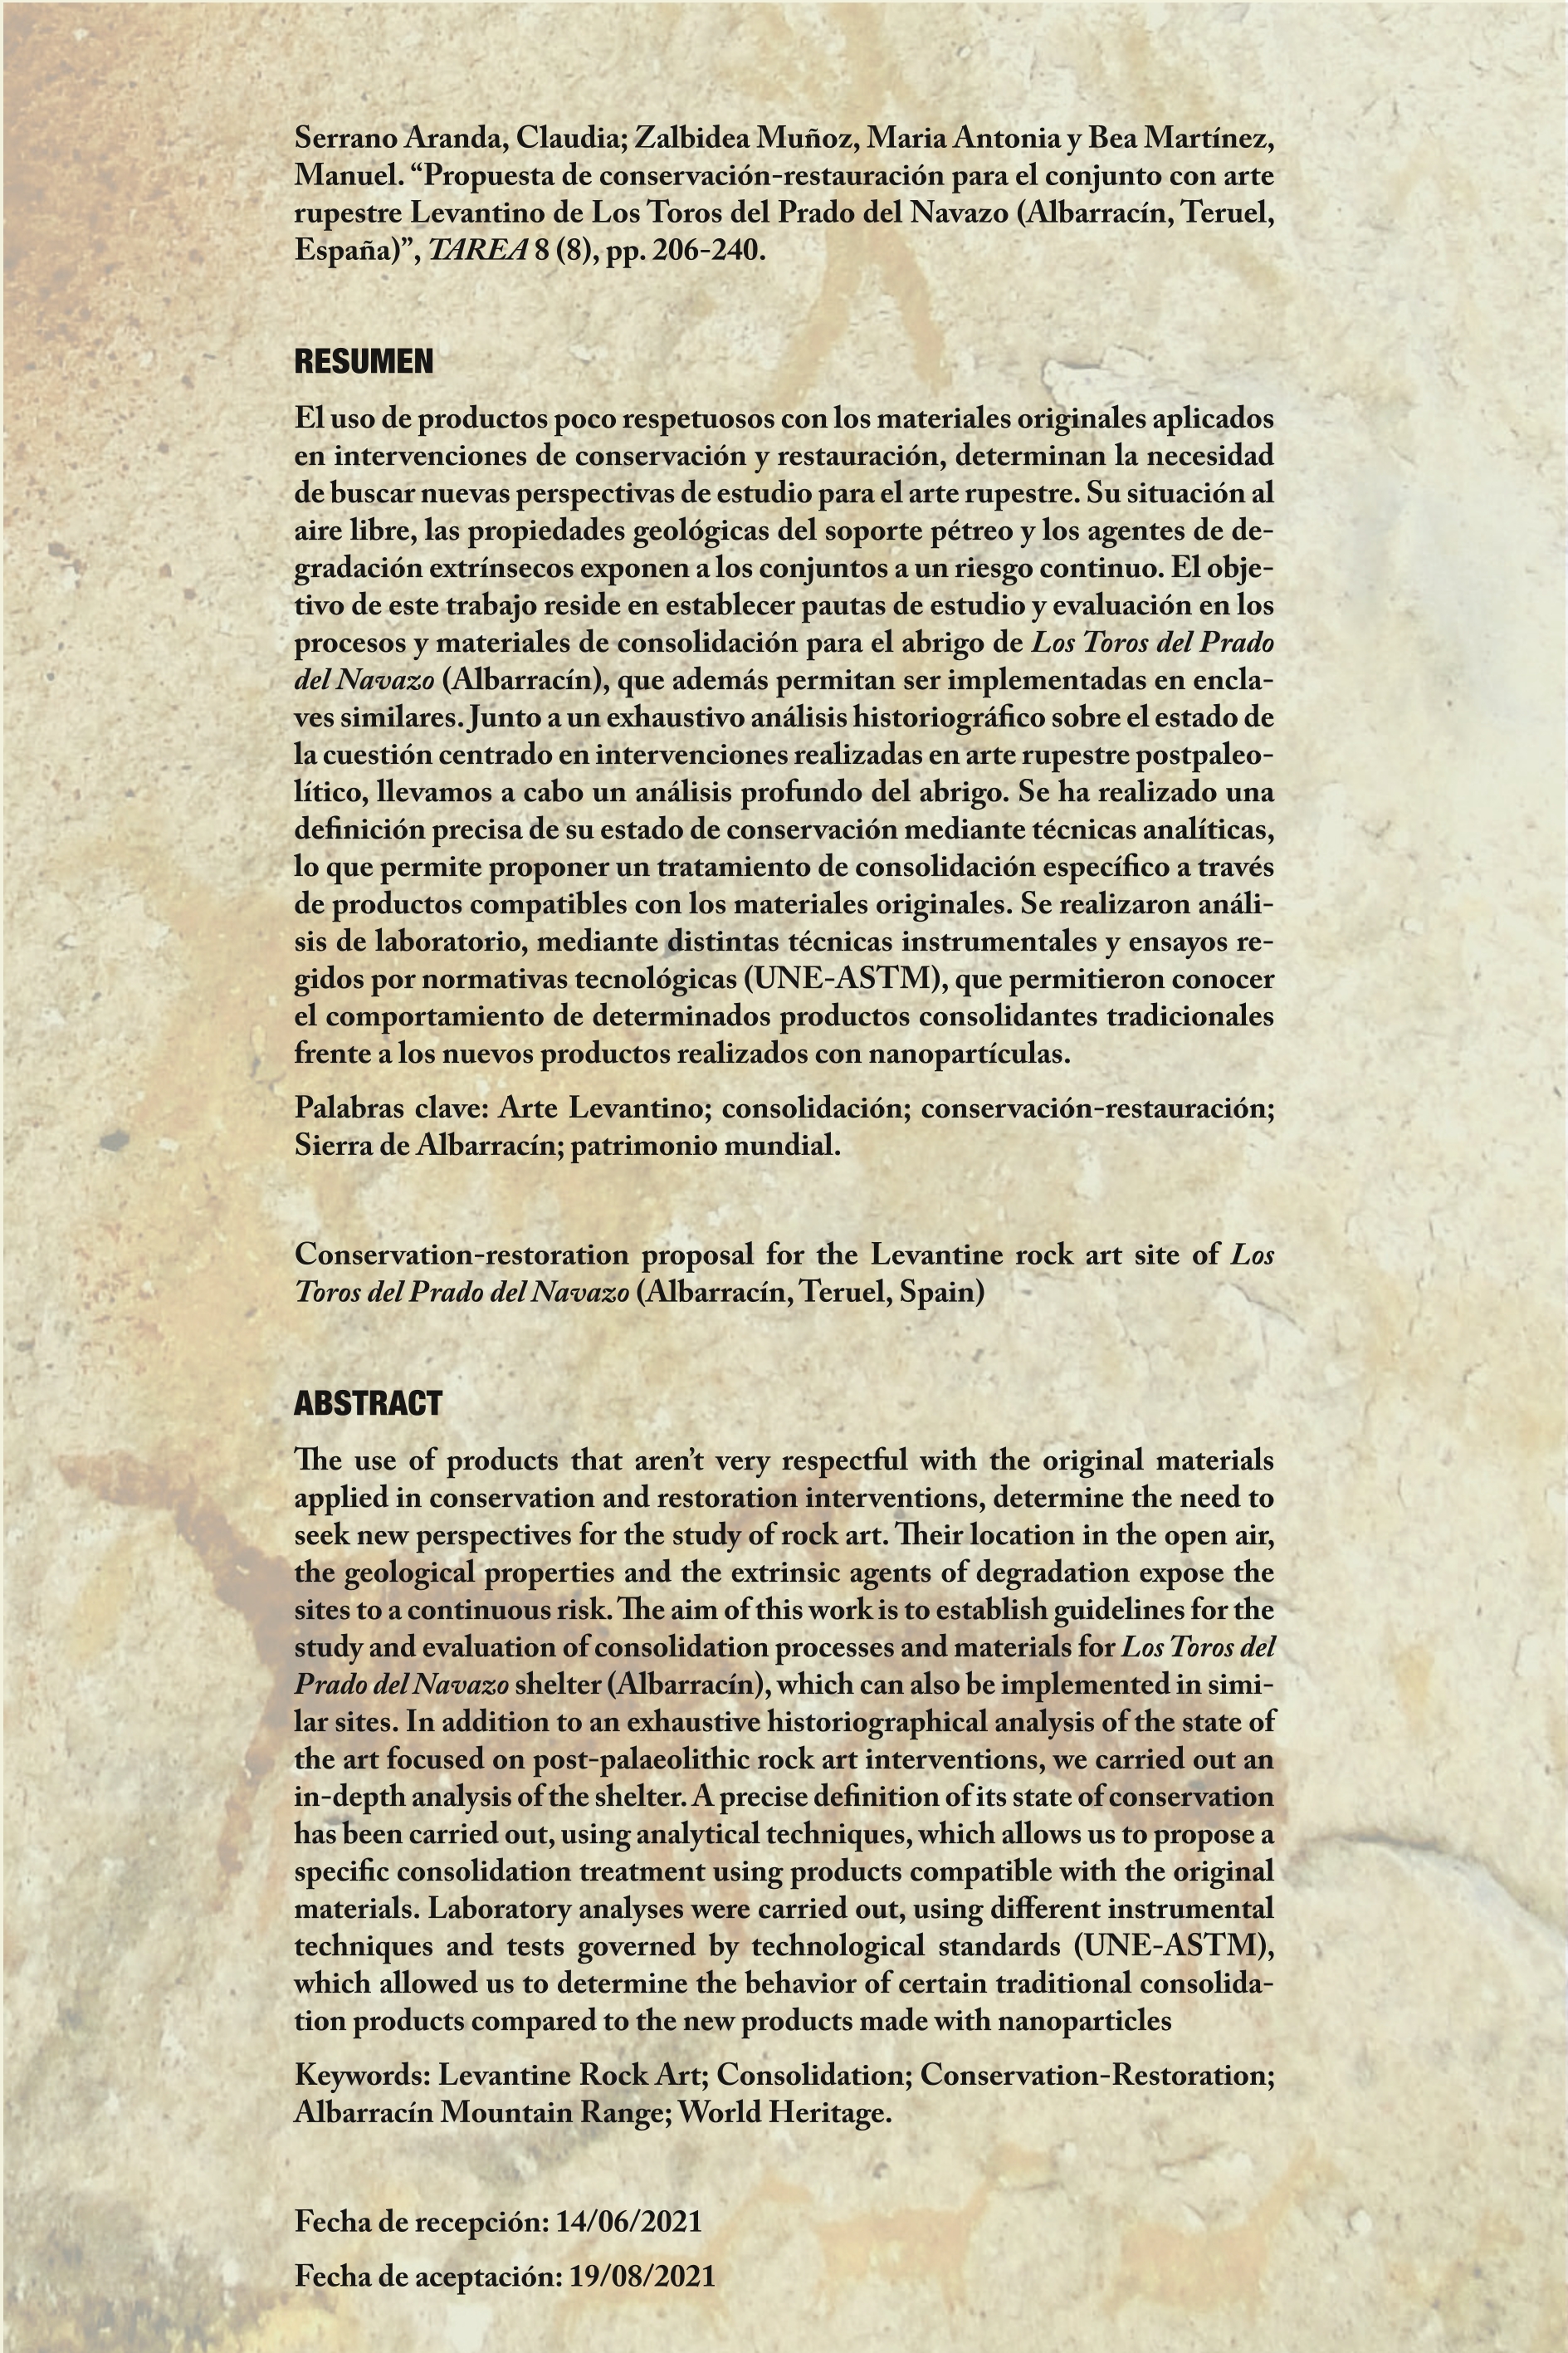 Propuesta de conservación-restauración para el conjunto con arte rupestre Levantino de Los Toros del Prado del Navazo (Albarracín, Teruel, España)